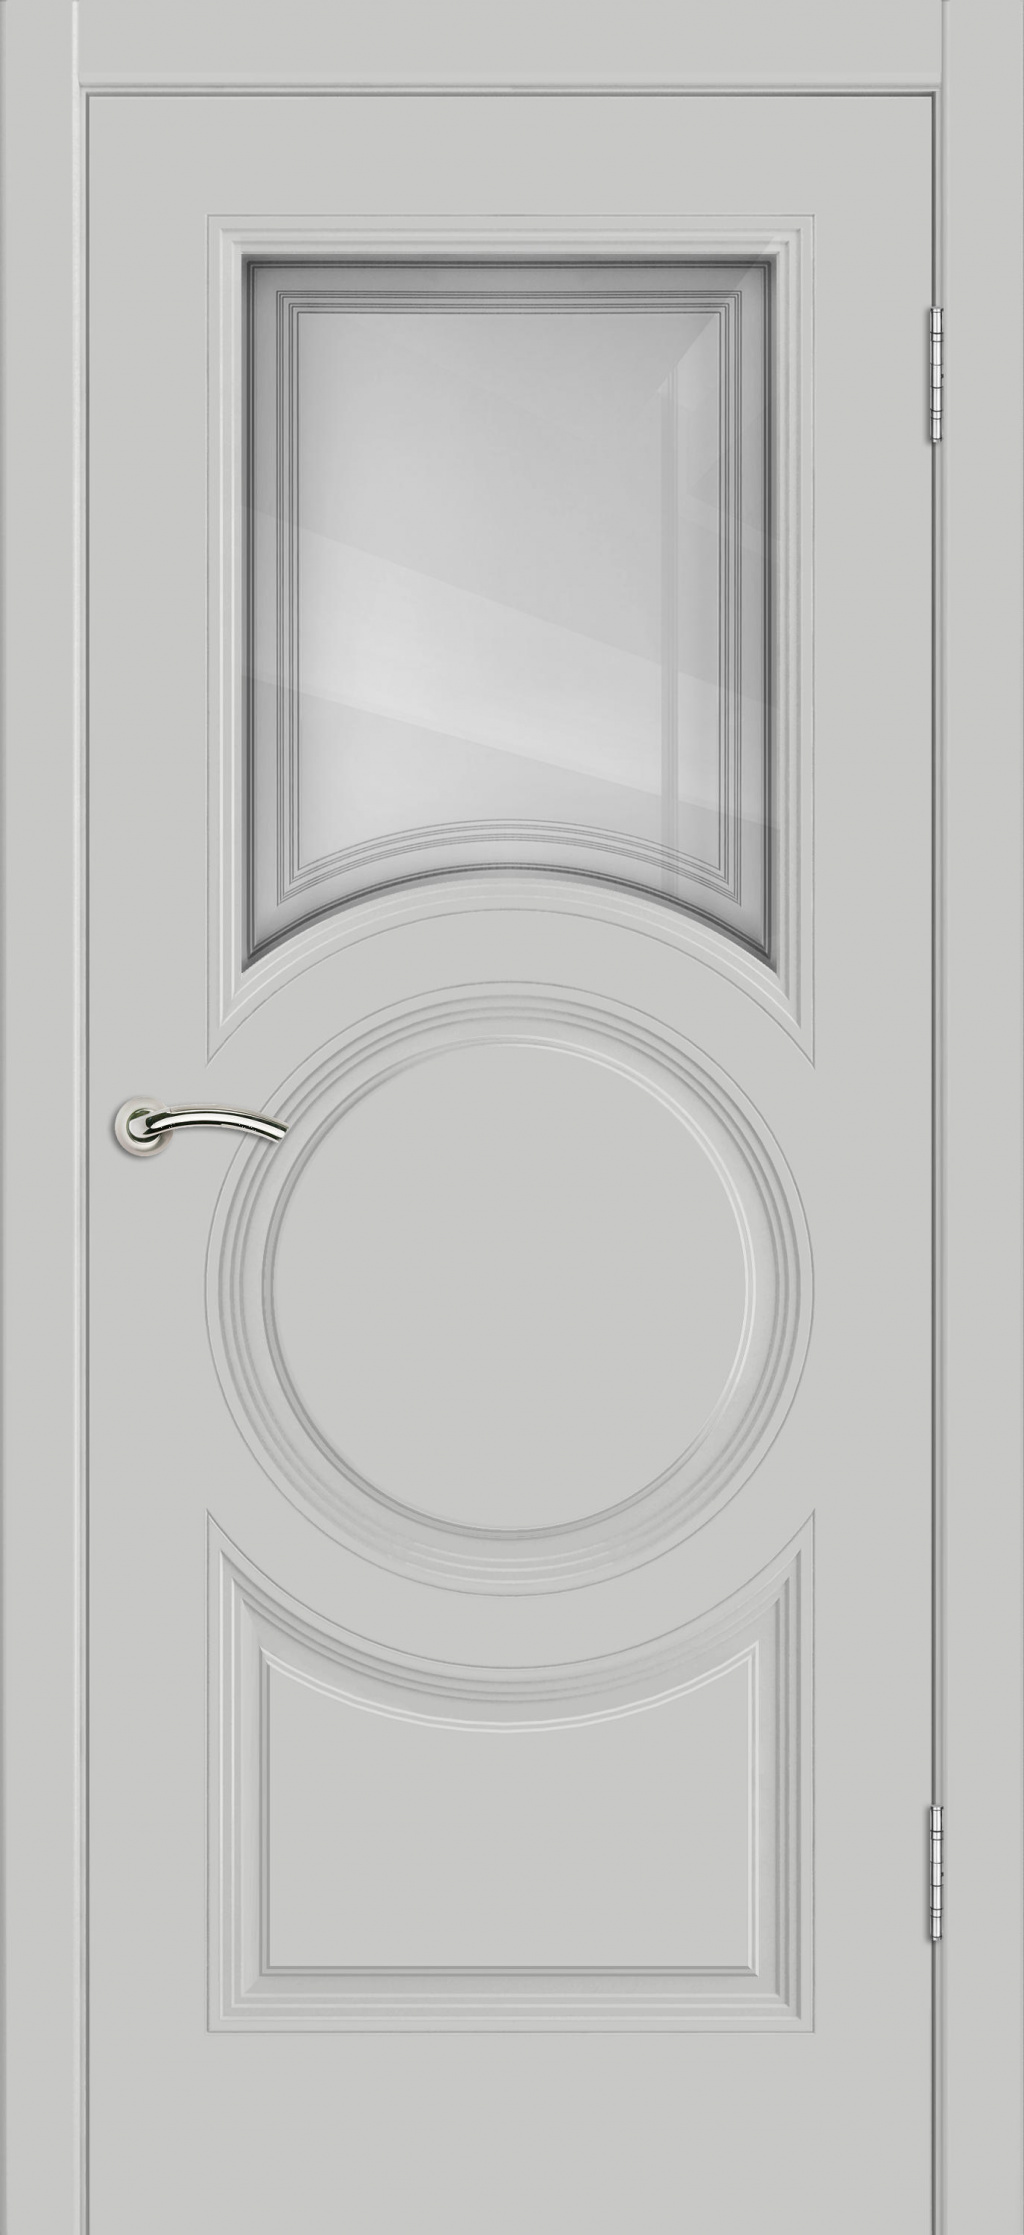 Cordondoor Межкомнатная дверь Vision 8 ПО Узор 1-1, арт. 25680 - фото №3